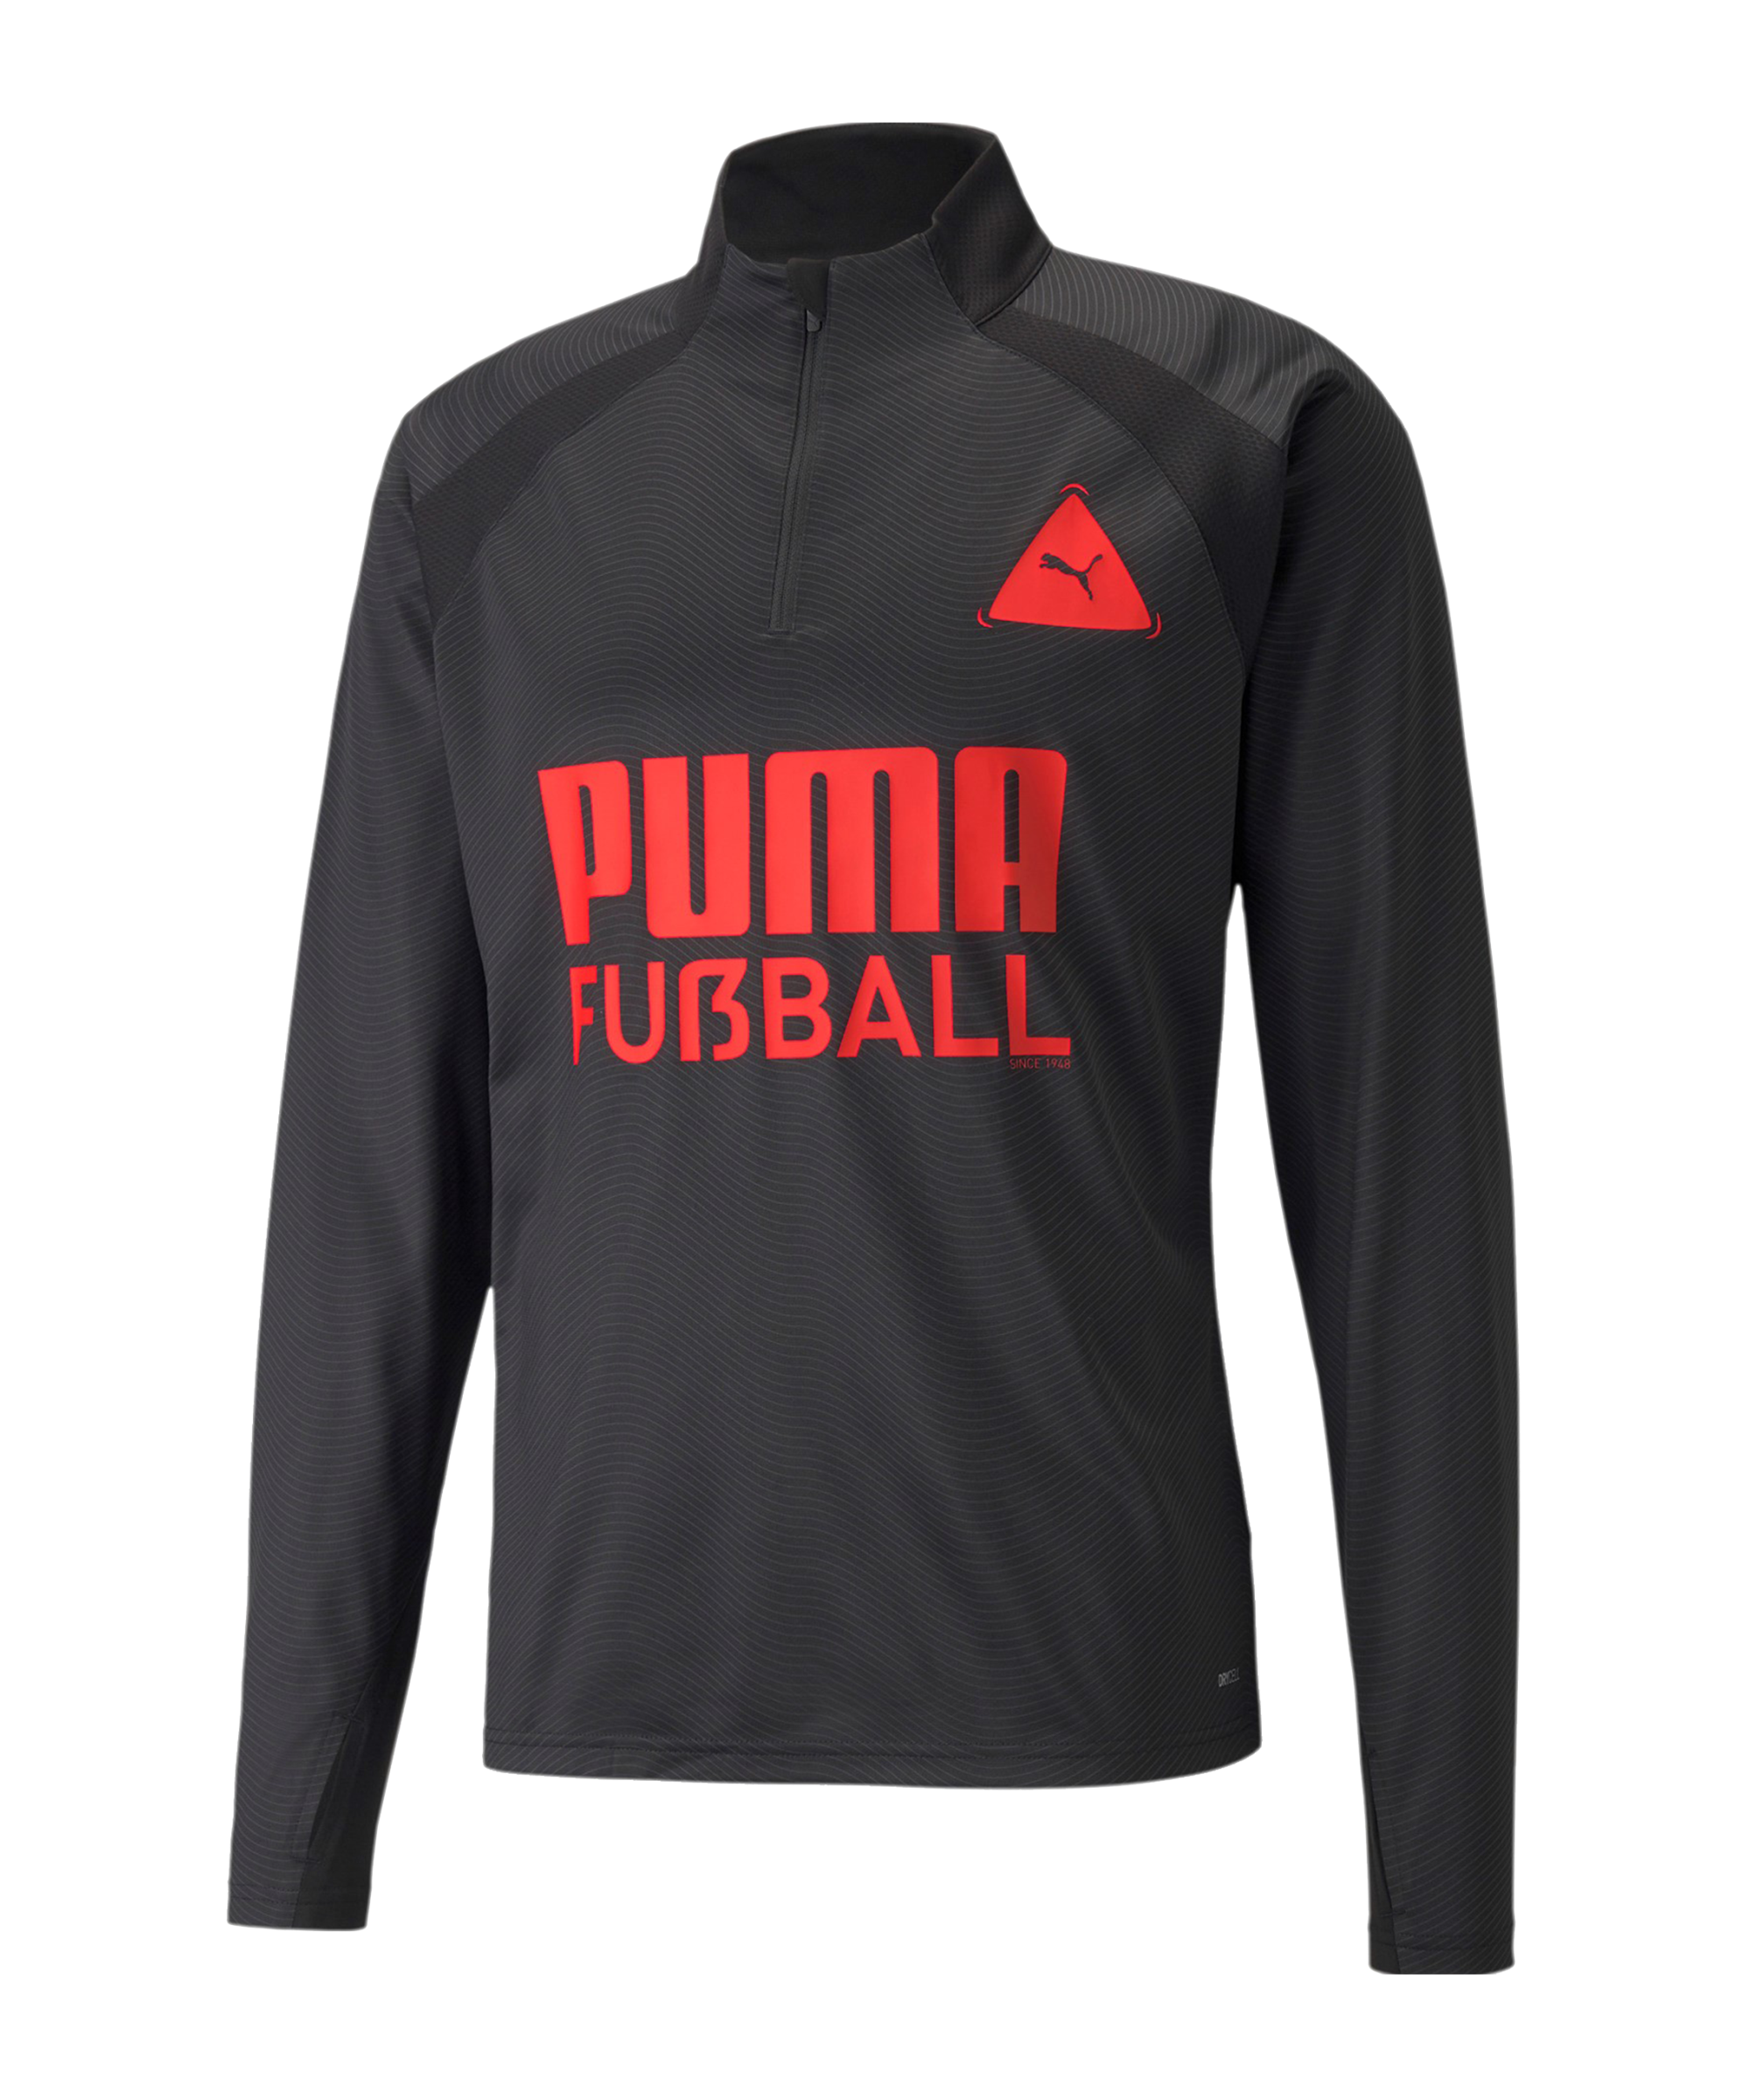 Bluza Puma FUßBALL PARK Training Top